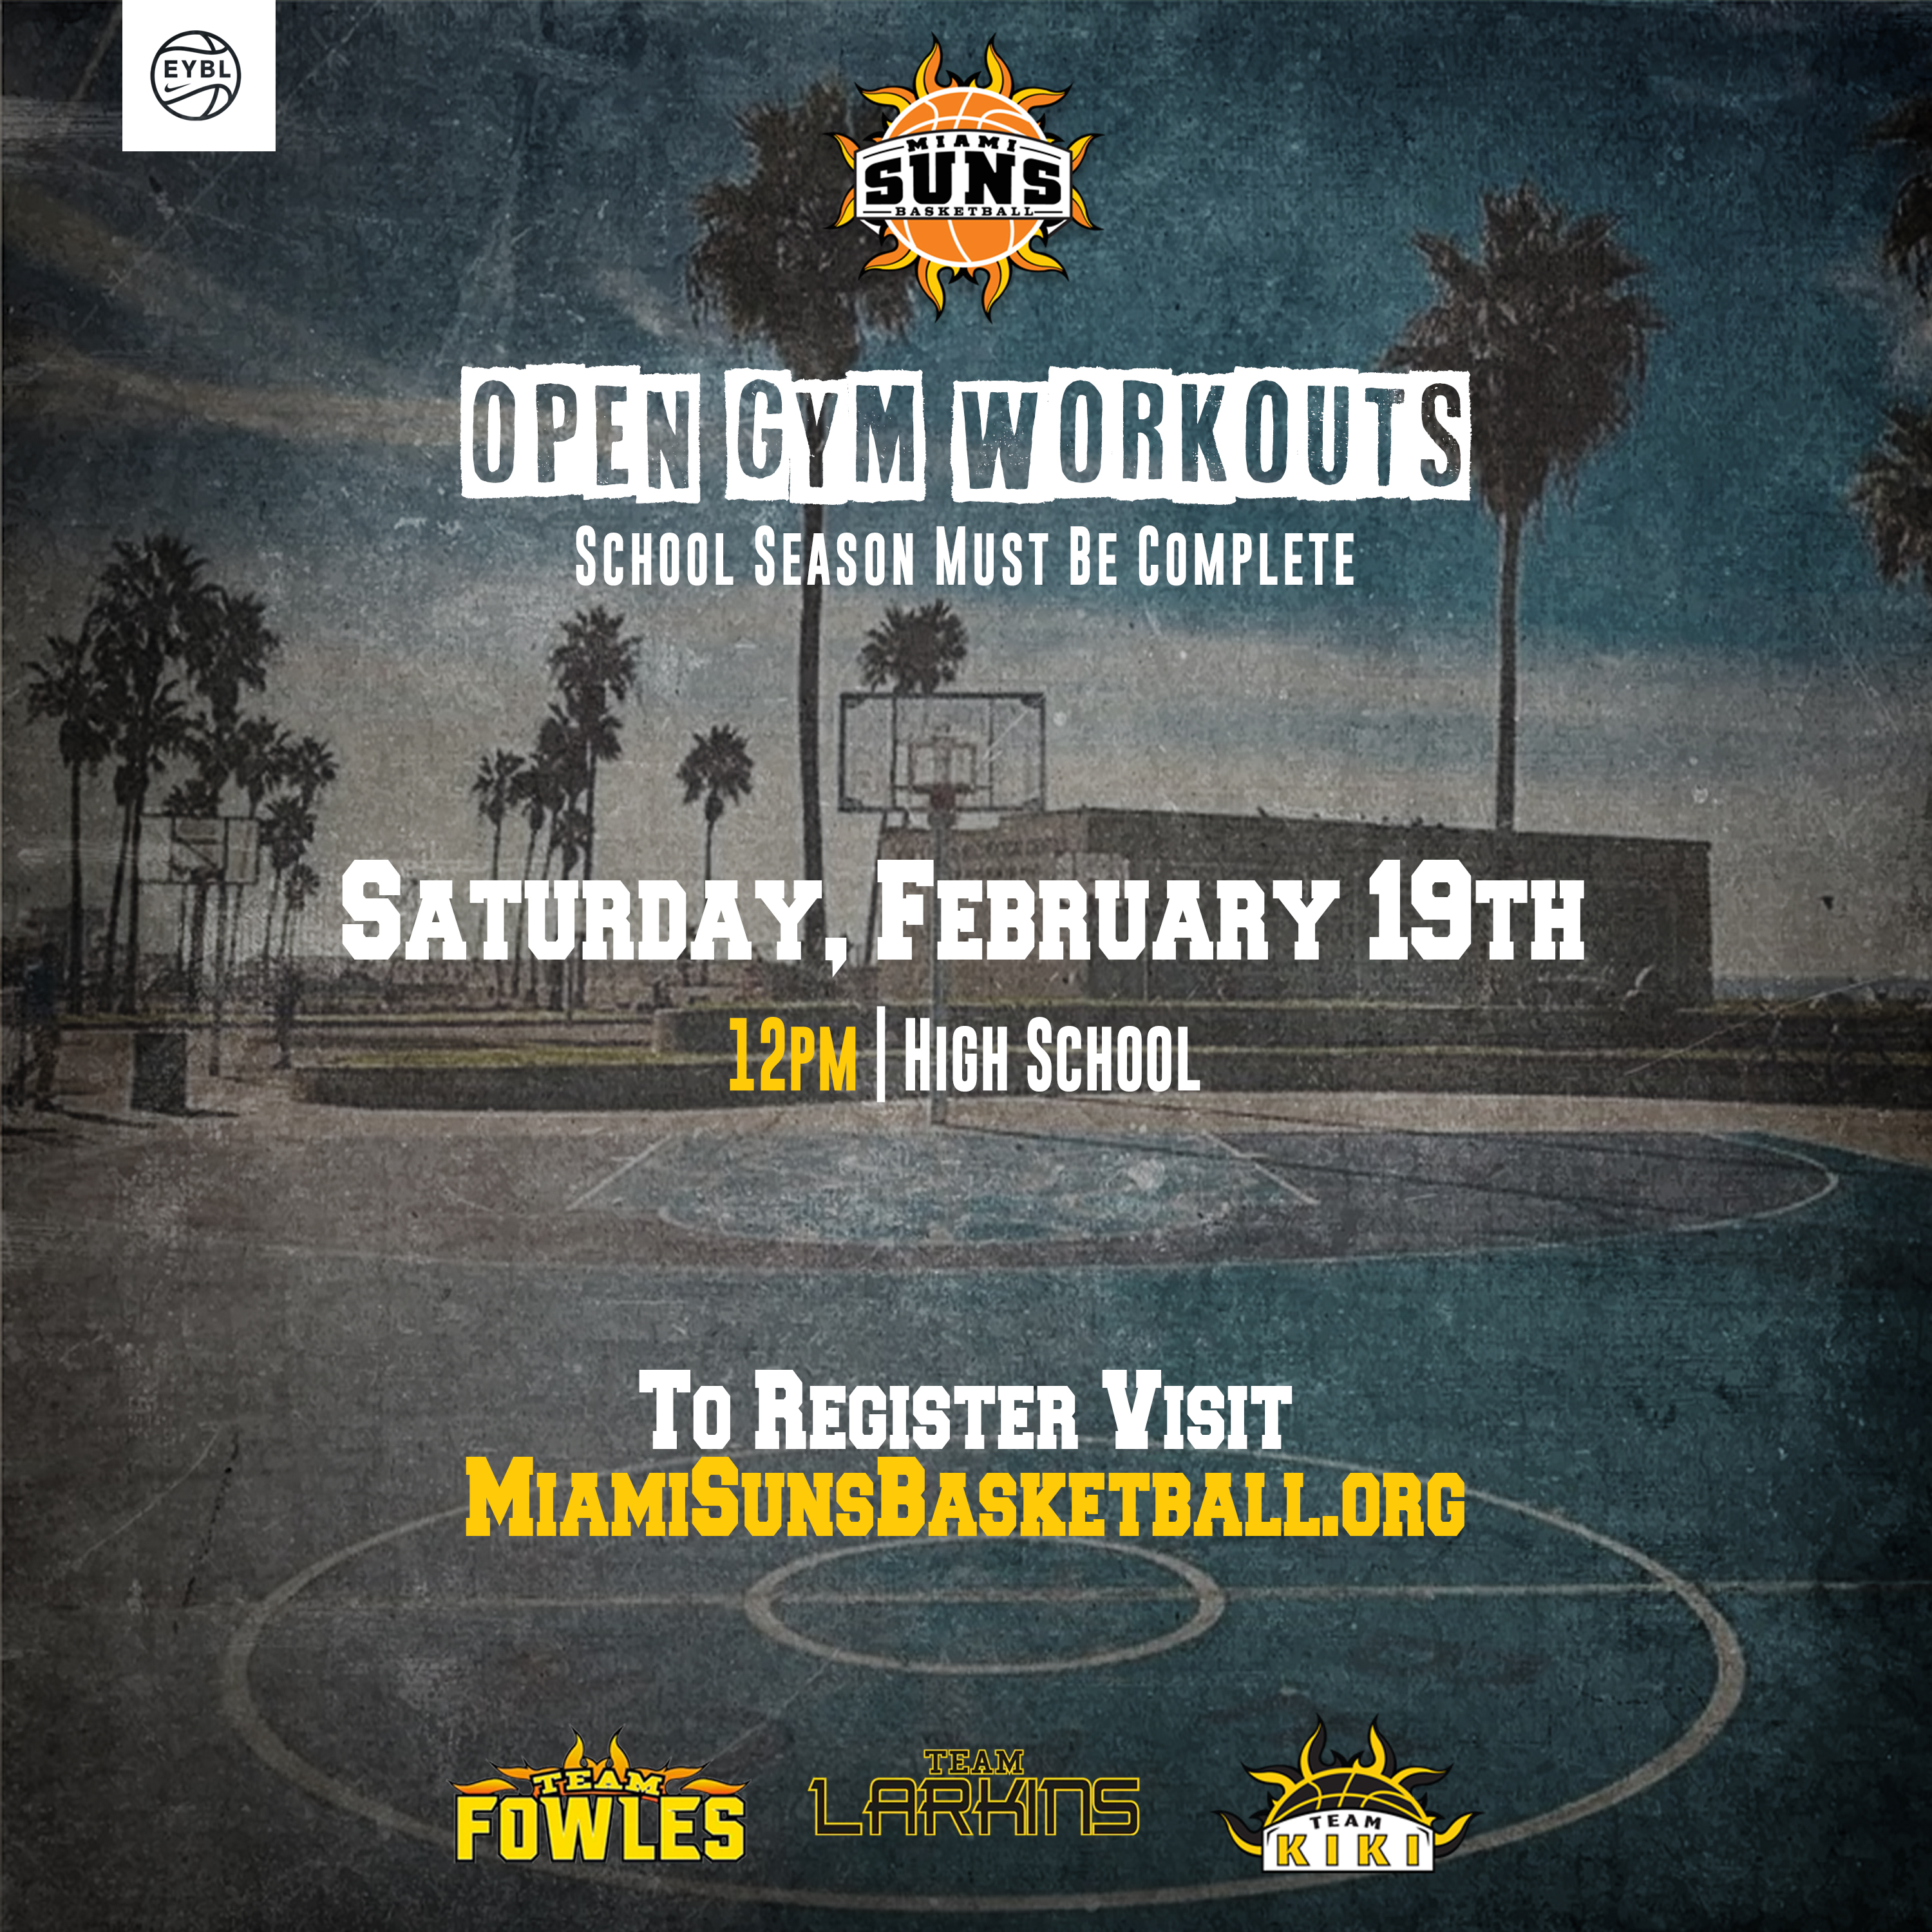 Miami Suns Open Workout – Saturday Feb 19th in Hialeah, FL.